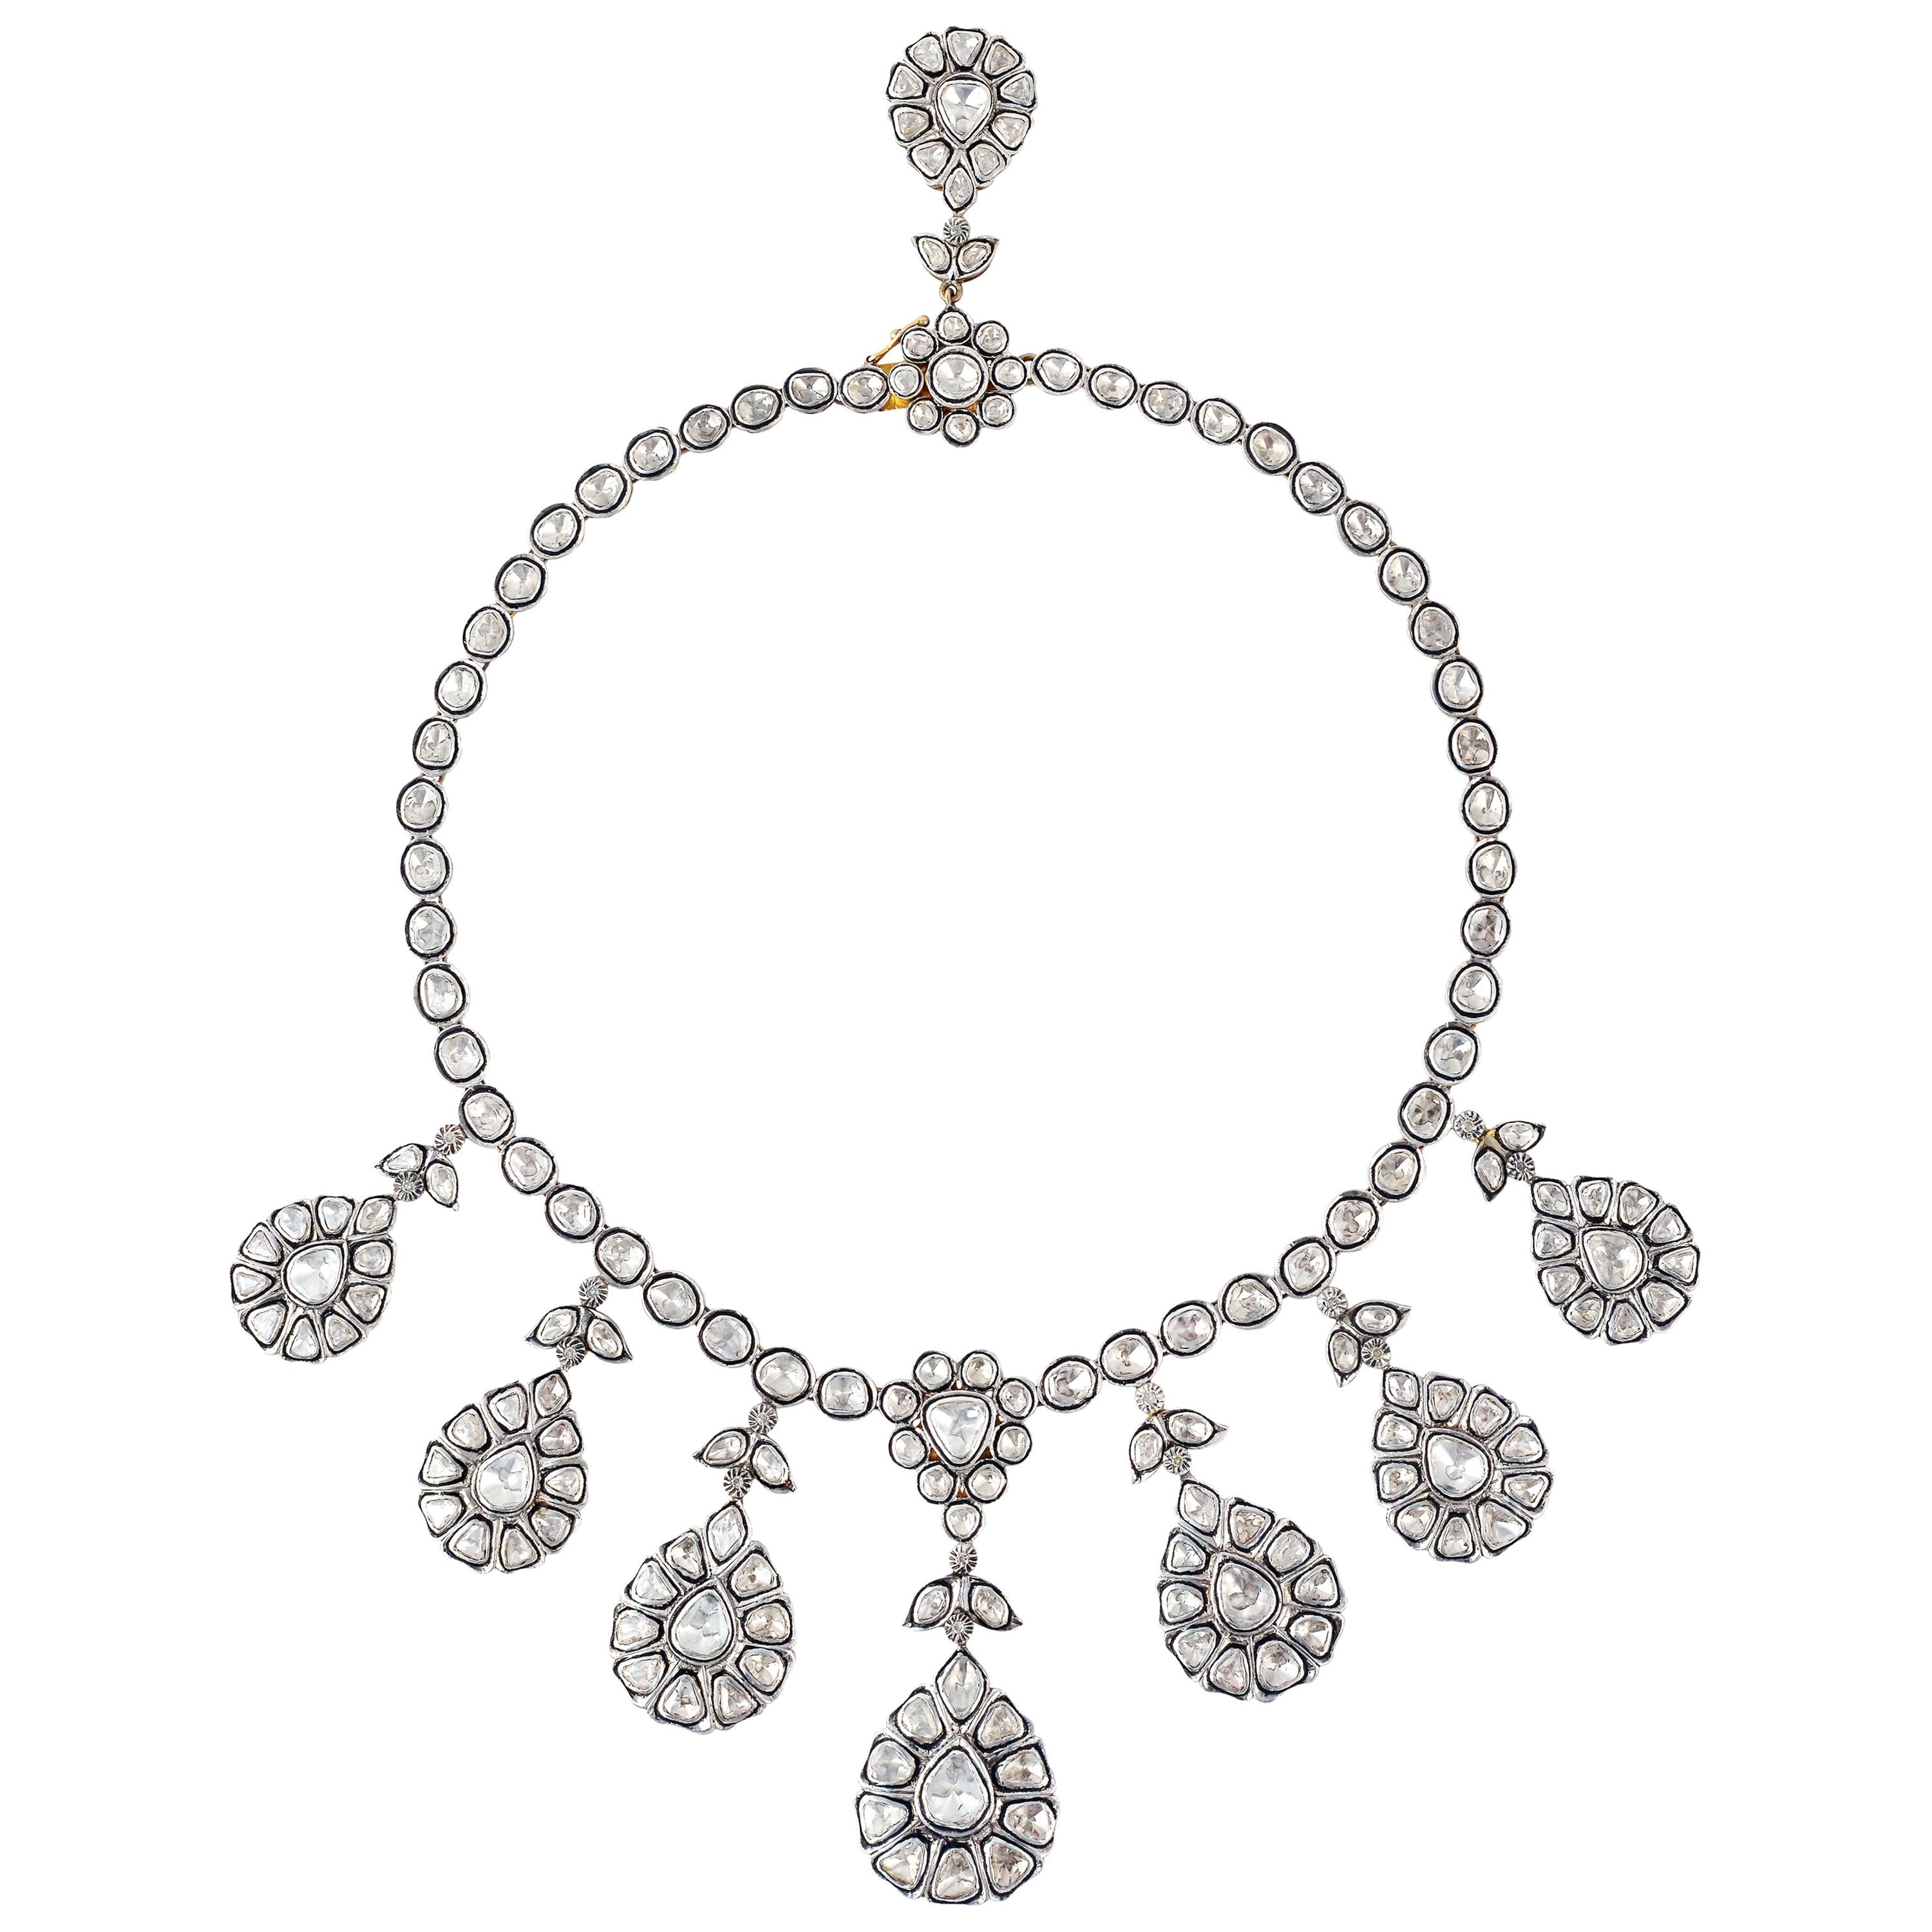 Maharaja 12.59 Carat Rose Cut Diamond Necklace